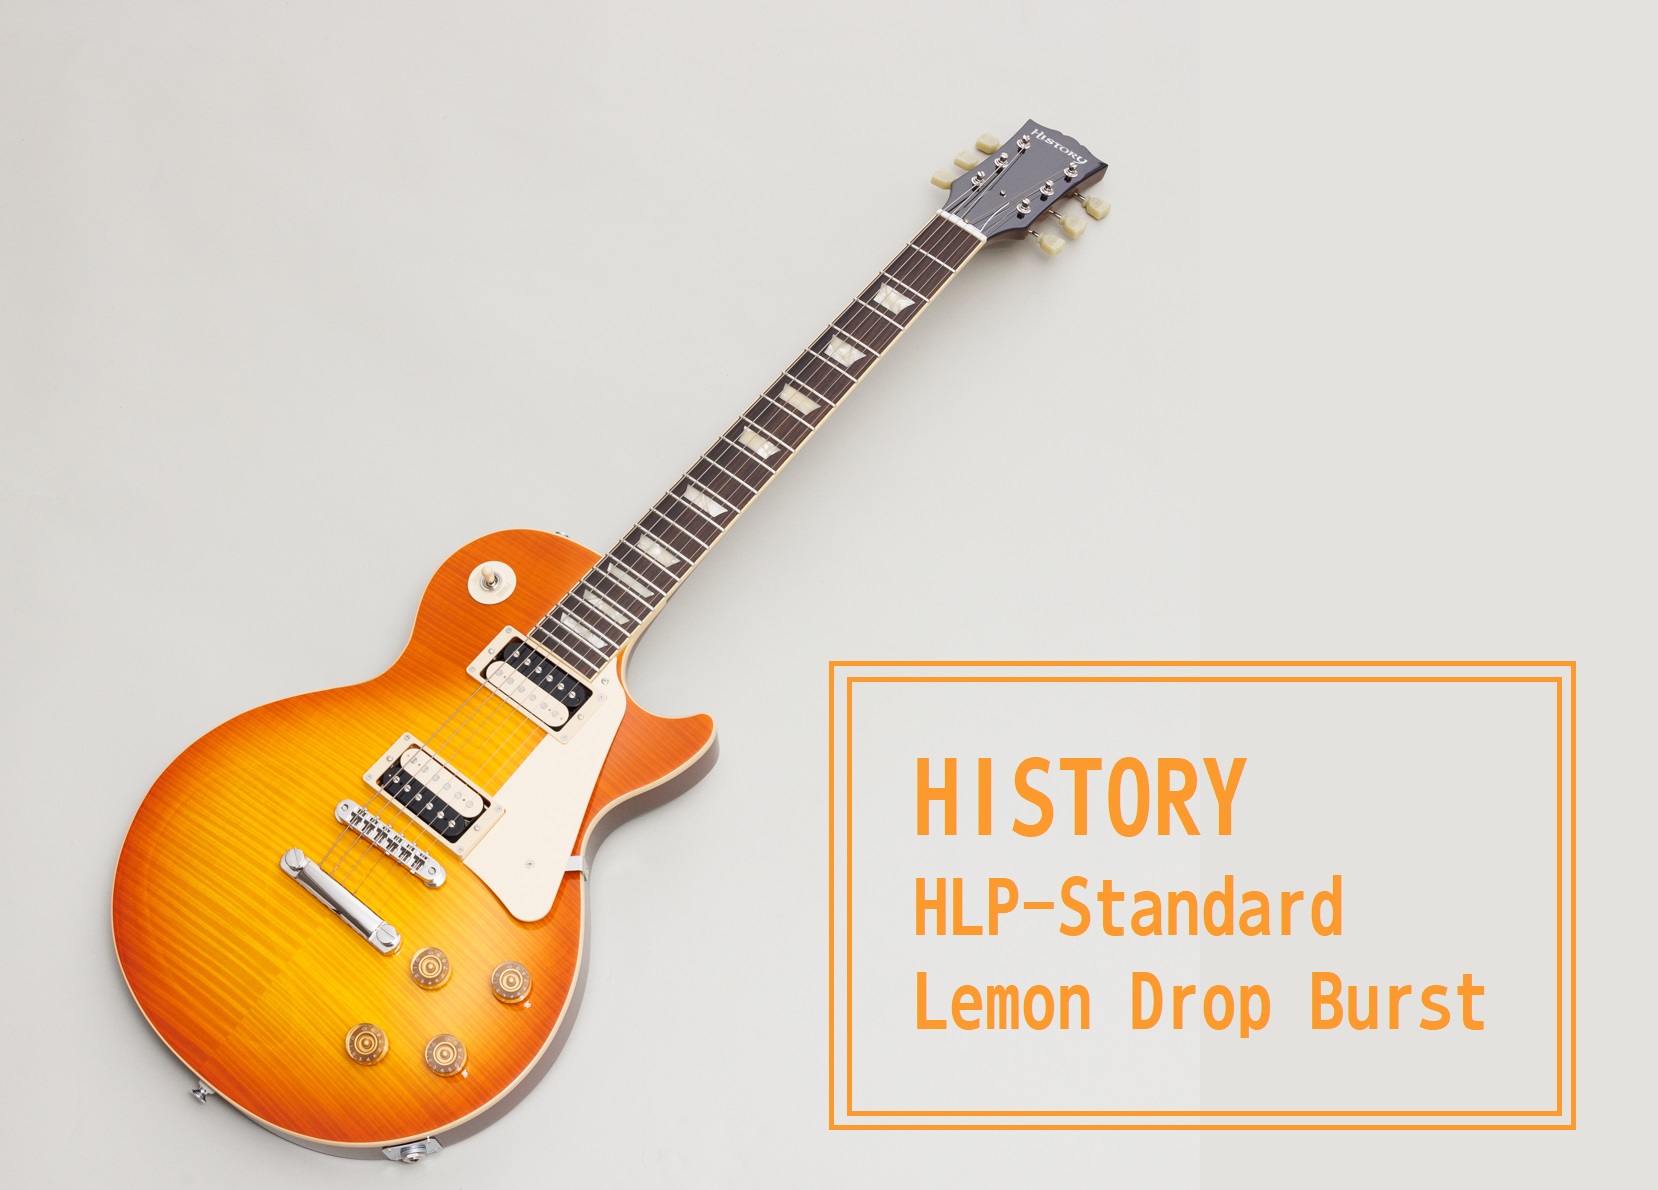 島村楽器大分店に、HISTORY(ヒストリー)のエレキギター『HLP-Standard』Lemon Drop Burst が入荷致しました！ 伝統的なスタイルをベースにしながら、より快適に演奏するための工夫、そして現代の音楽シーンにマッチするサウンドを詰め込んだHISTORY Standardシリー […]